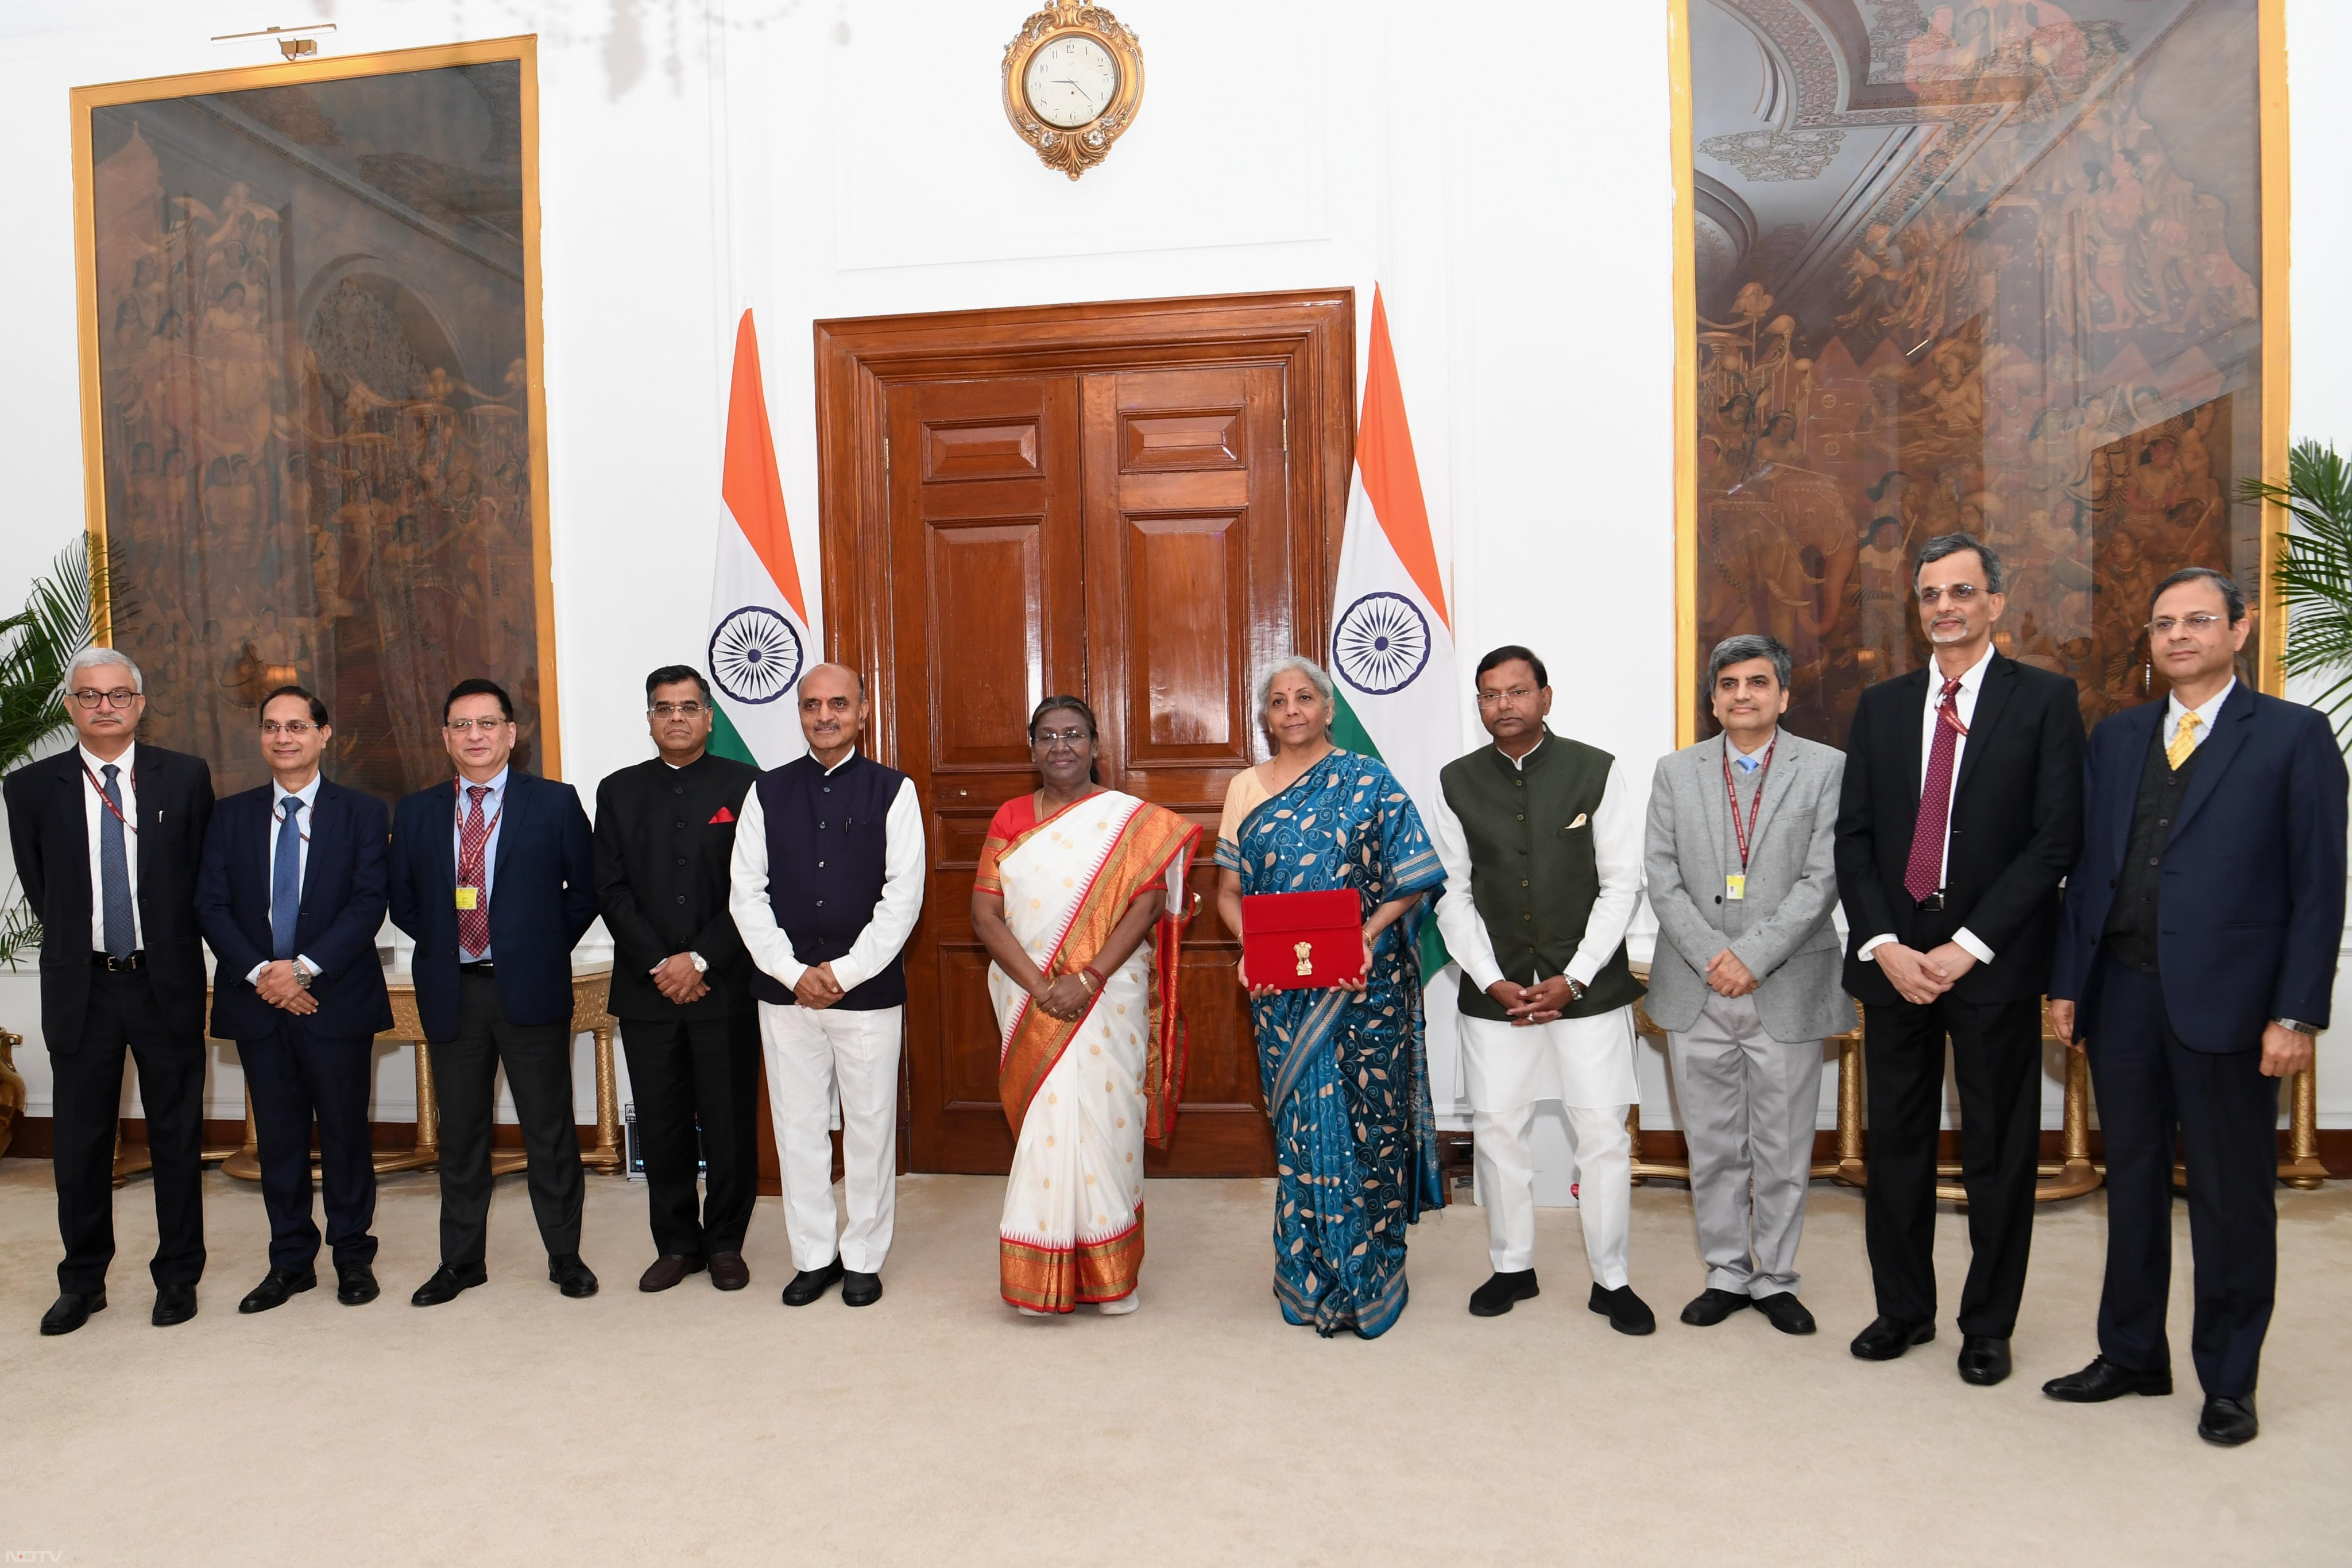 वित्त मंत्रालय के अधिकारियों के साथ राष्ट्रपति द्रौपदी मुर्मू और वित्त मंत्री निर्मला सीतारमण